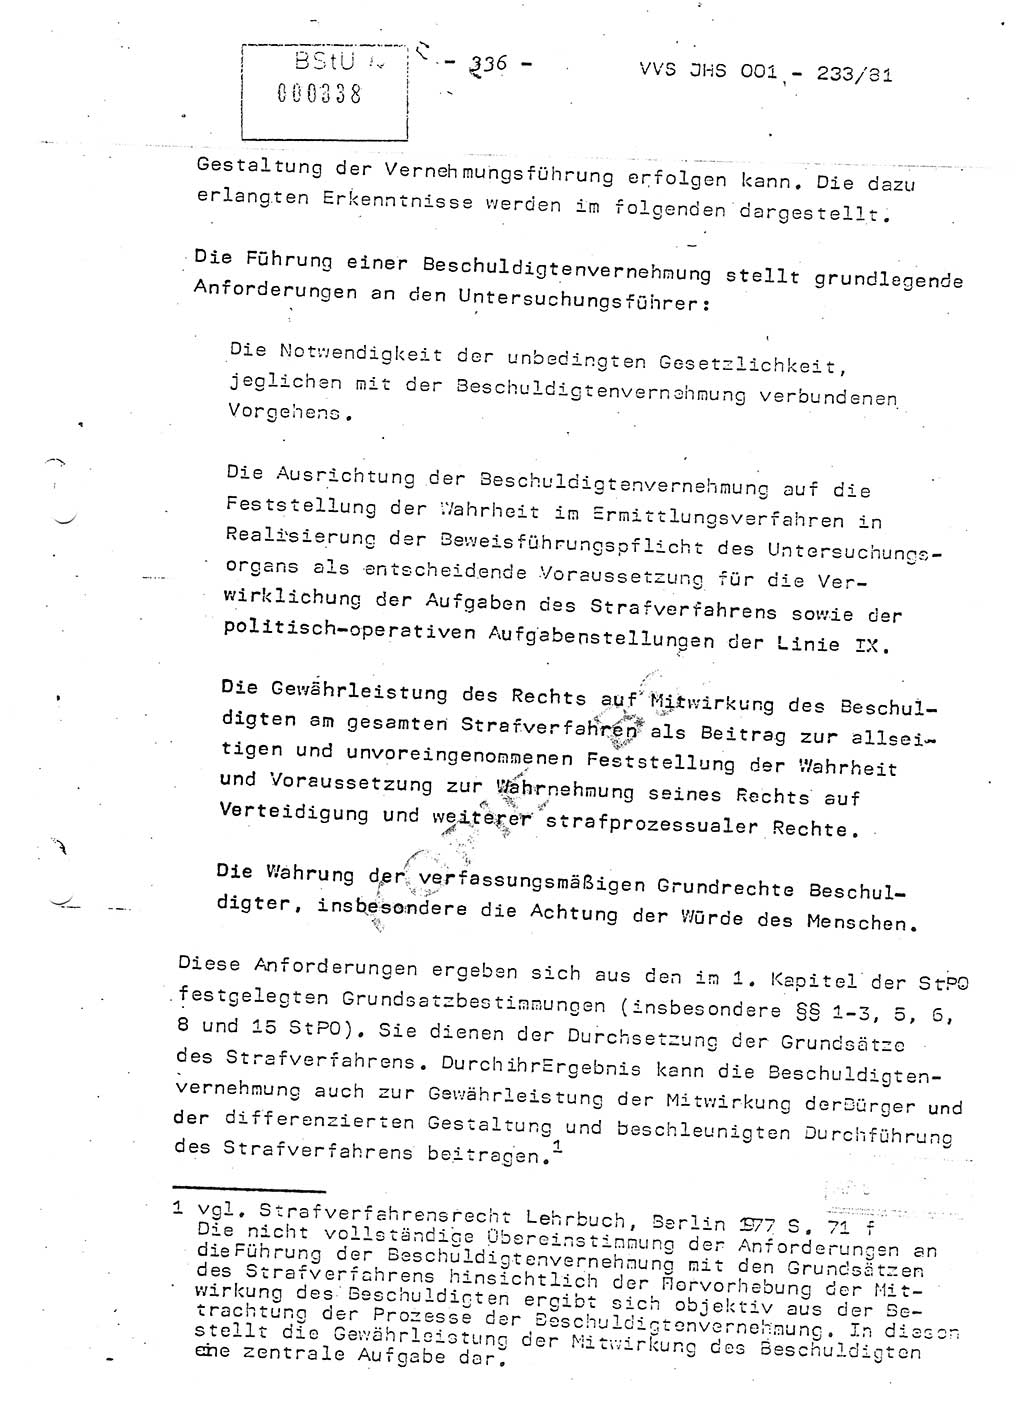 Dissertation Oberstleutnant Horst Zank (JHS), Oberstleutnant Dr. Karl-Heinz Knoblauch (JHS), Oberstleutnant Gustav-Adolf Kowalewski (HA Ⅸ), Oberstleutnant Wolfgang Plötner (HA Ⅸ), Ministerium für Staatssicherheit (MfS) [Deutsche Demokratische Republik (DDR)], Juristische Hochschule (JHS), Vertrauliche Verschlußsache (VVS) o001-233/81, Potsdam 1981, Blatt 336 (Diss. MfS DDR JHS VVS o001-233/81 1981, Bl. 336)